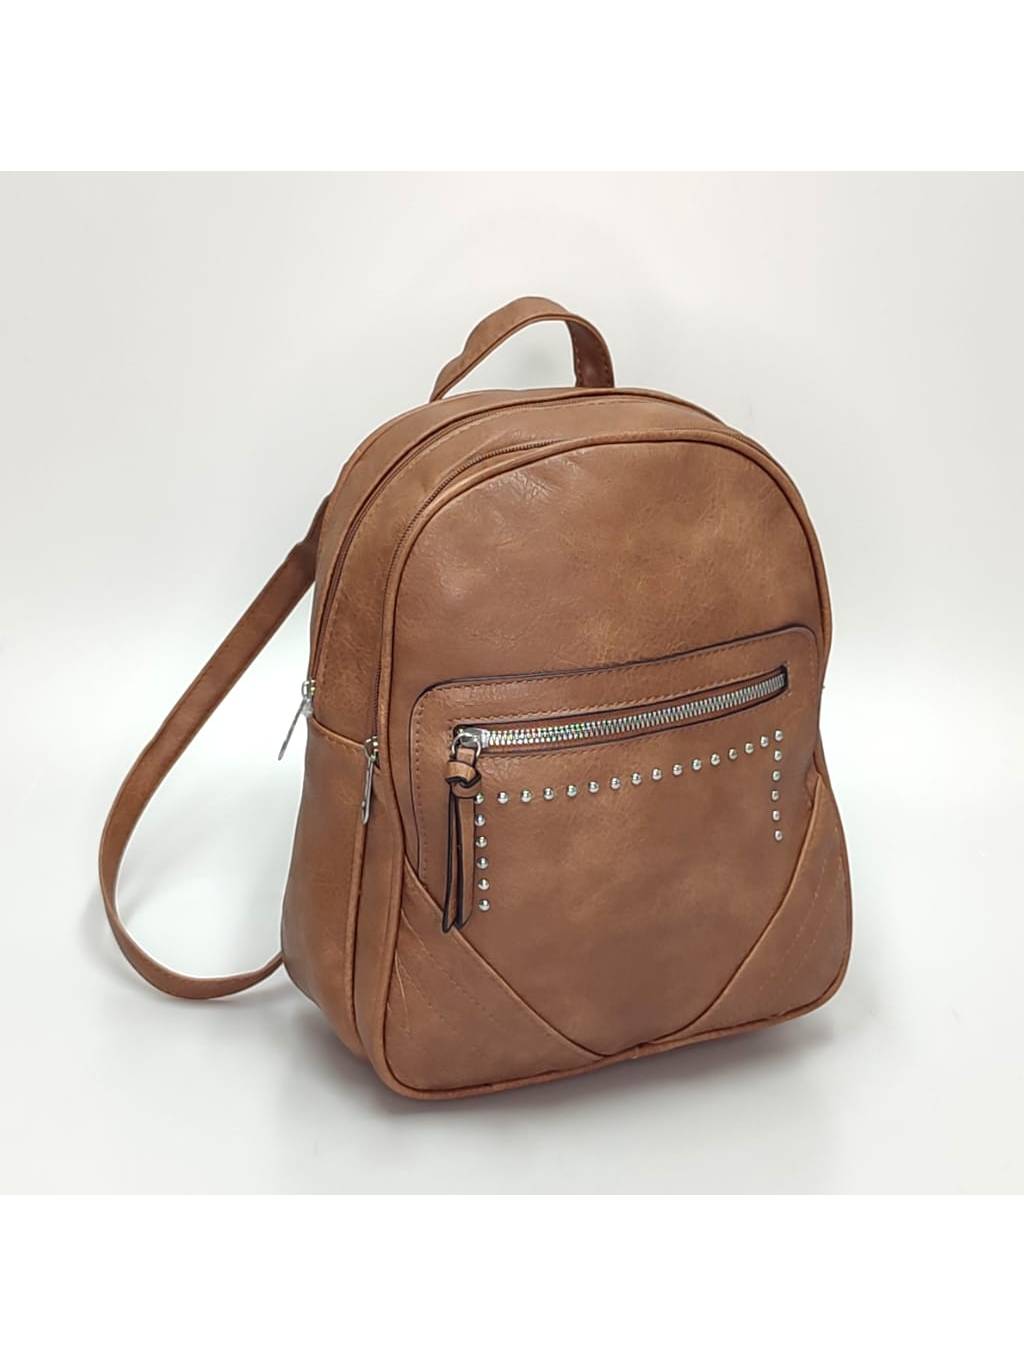 Dámsky ruksak 6301 tmavo béžový www.kabelky vypredaj (3)